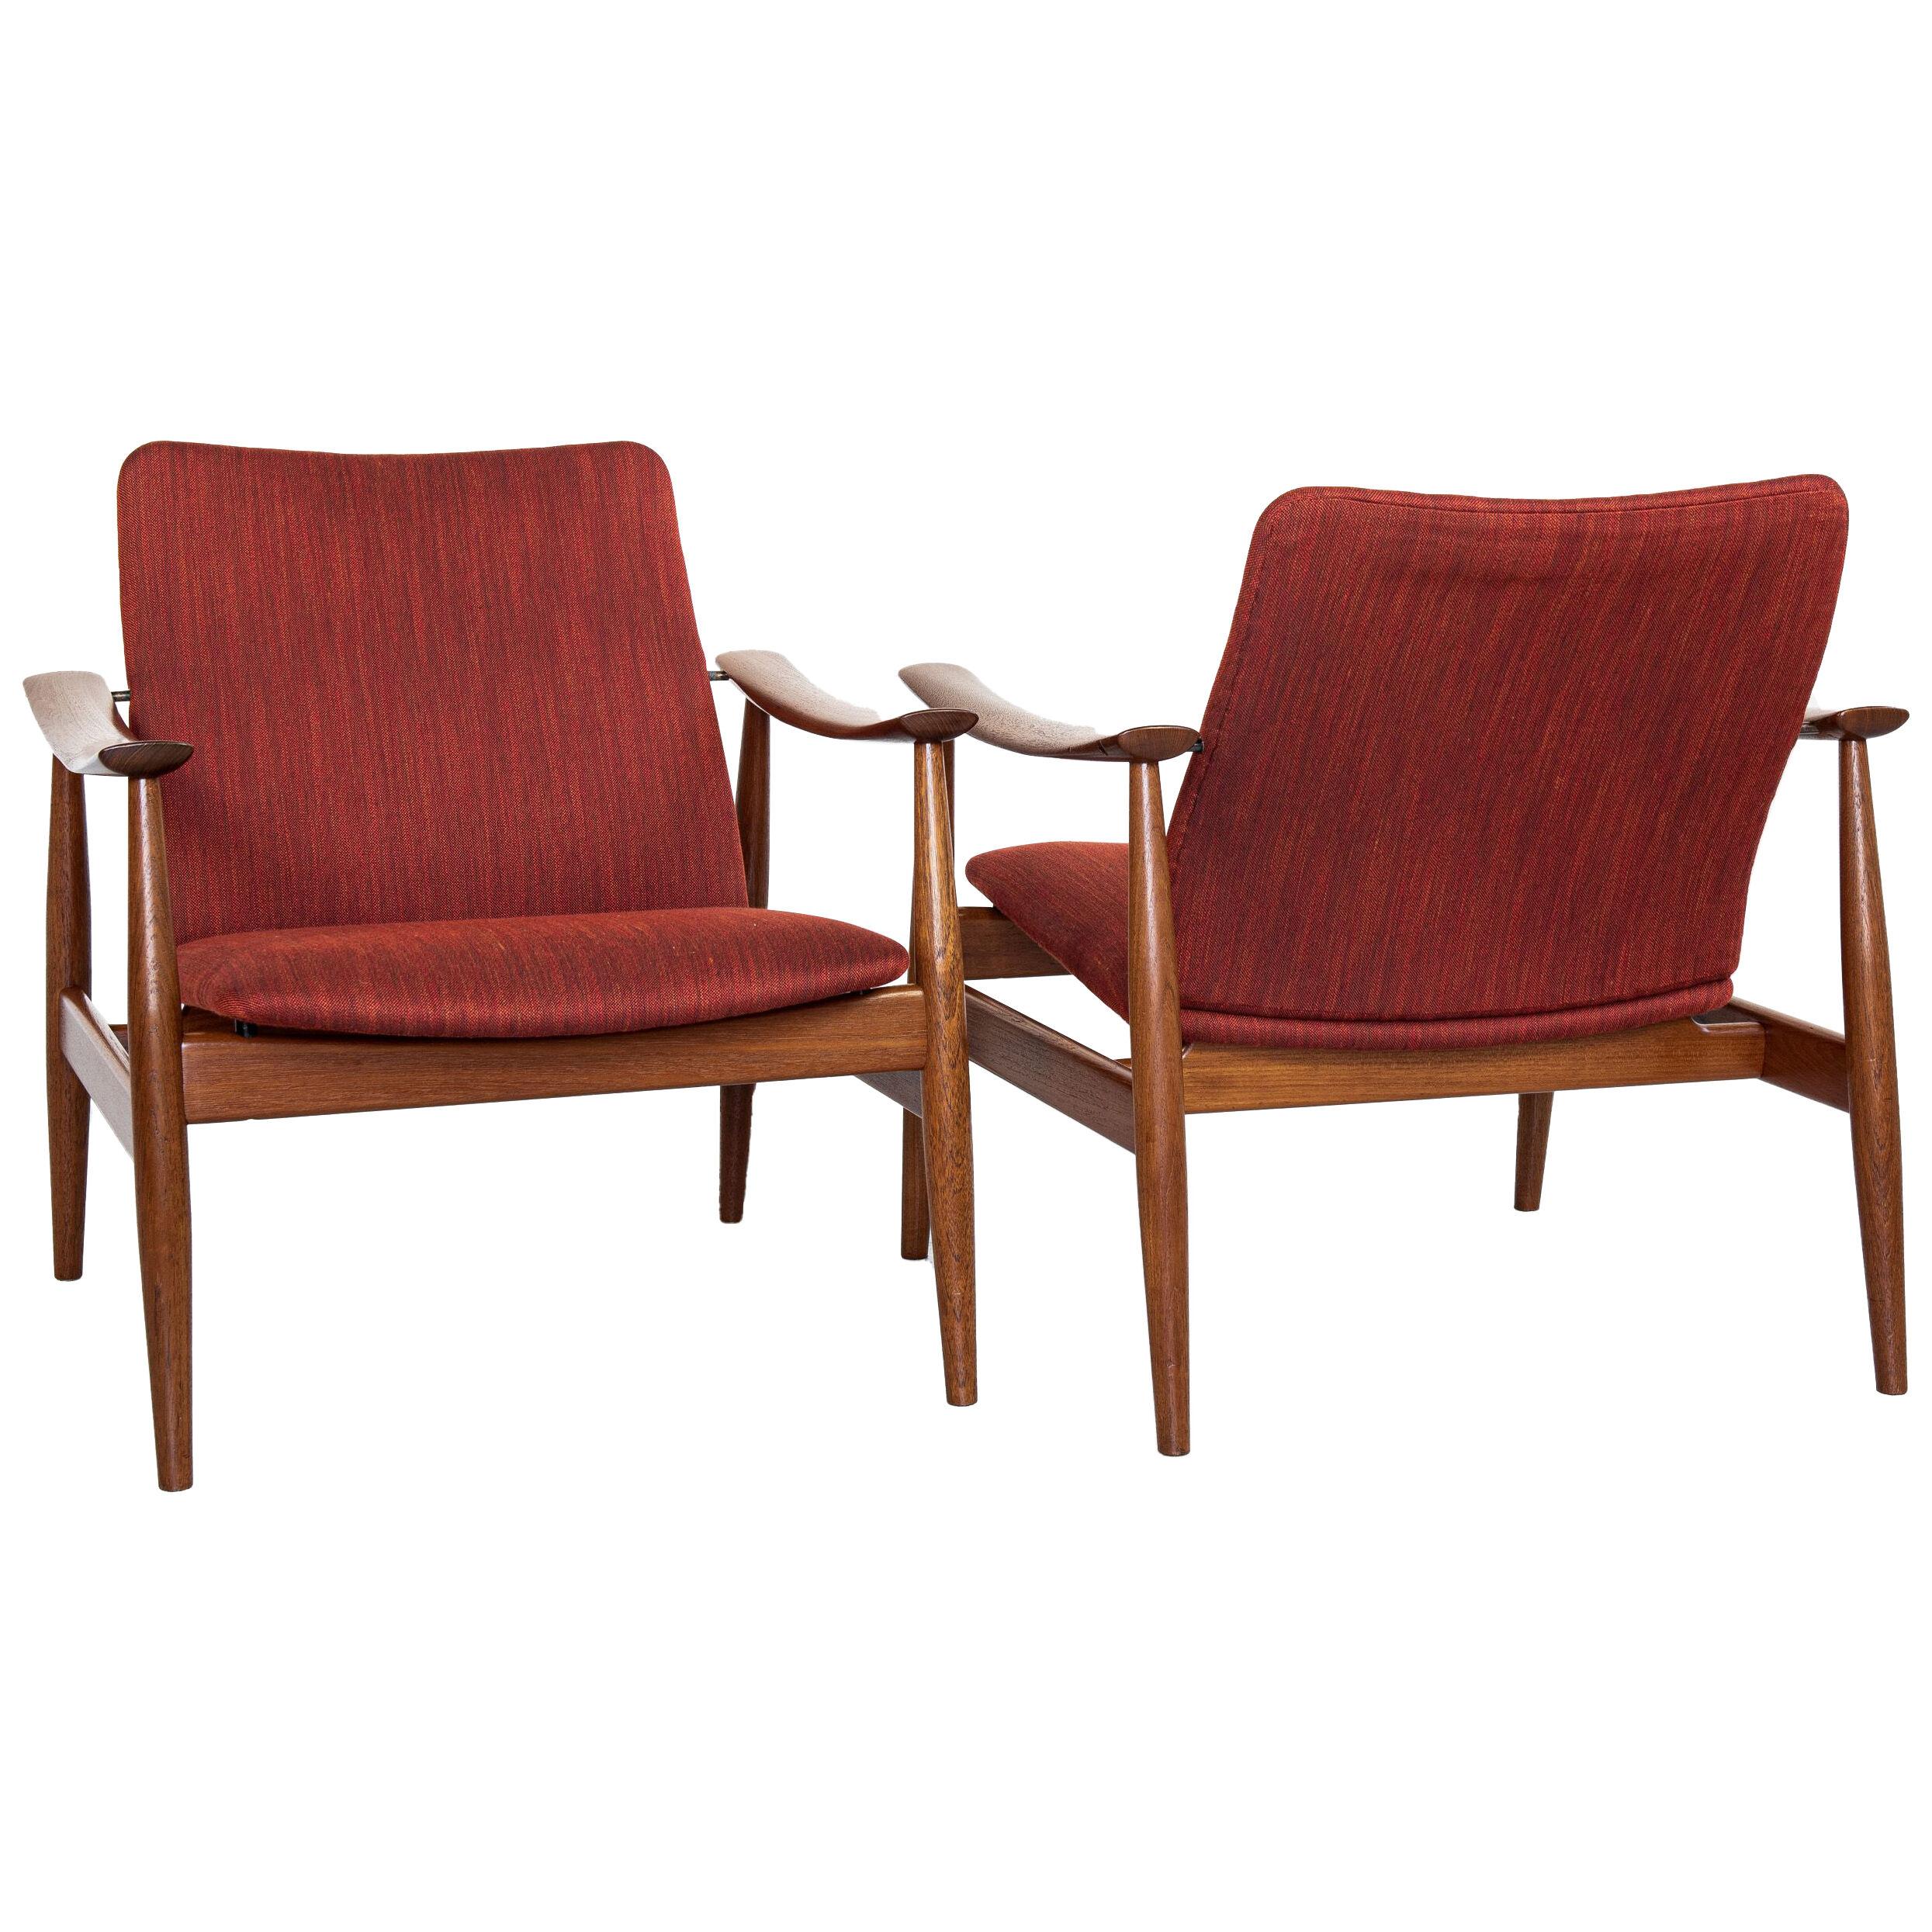 Midcentury Danish pair of easy chairs model 138 by Finn Juhl for France & Søn